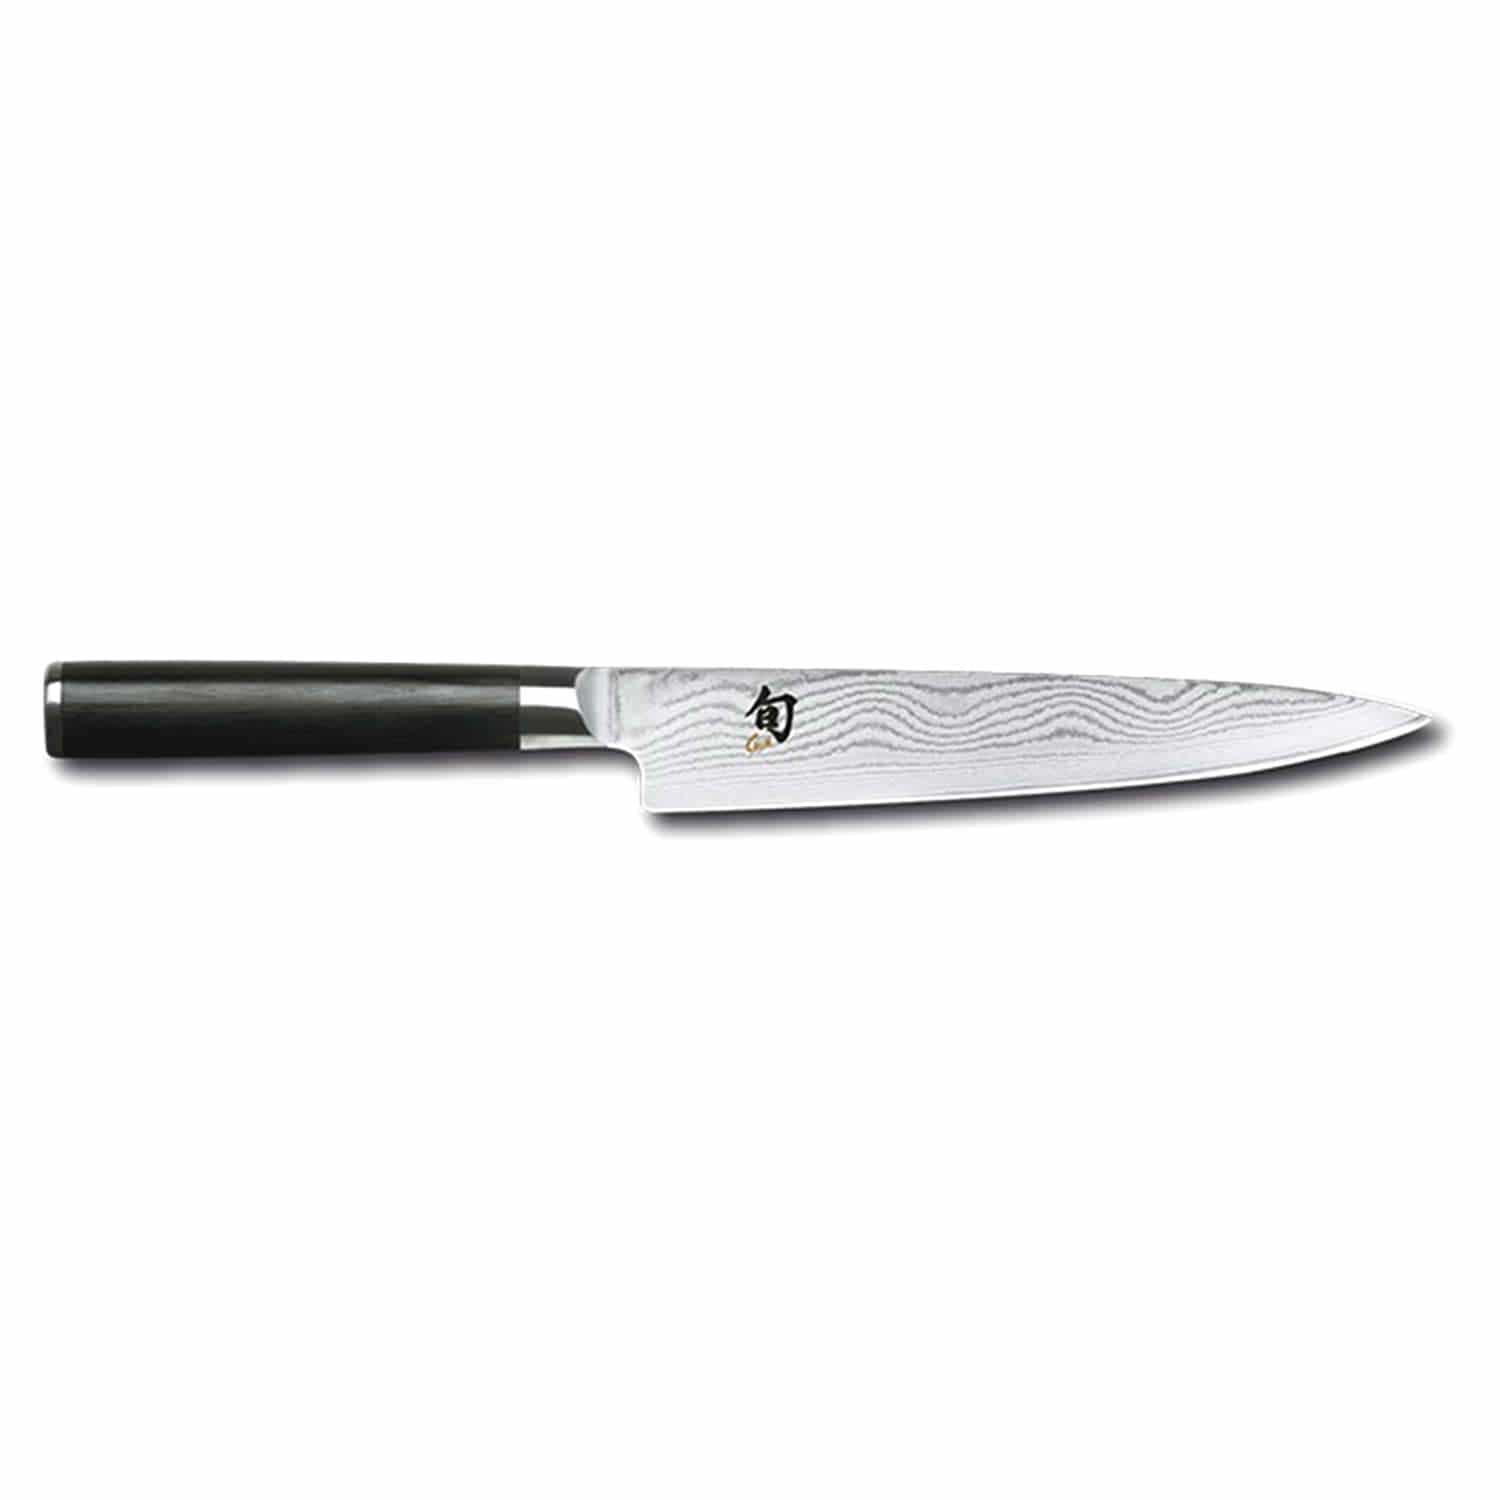 Kai Shun 6 Utility Knife - Black, 15 cm - DM-0701 - Jashanmal Home